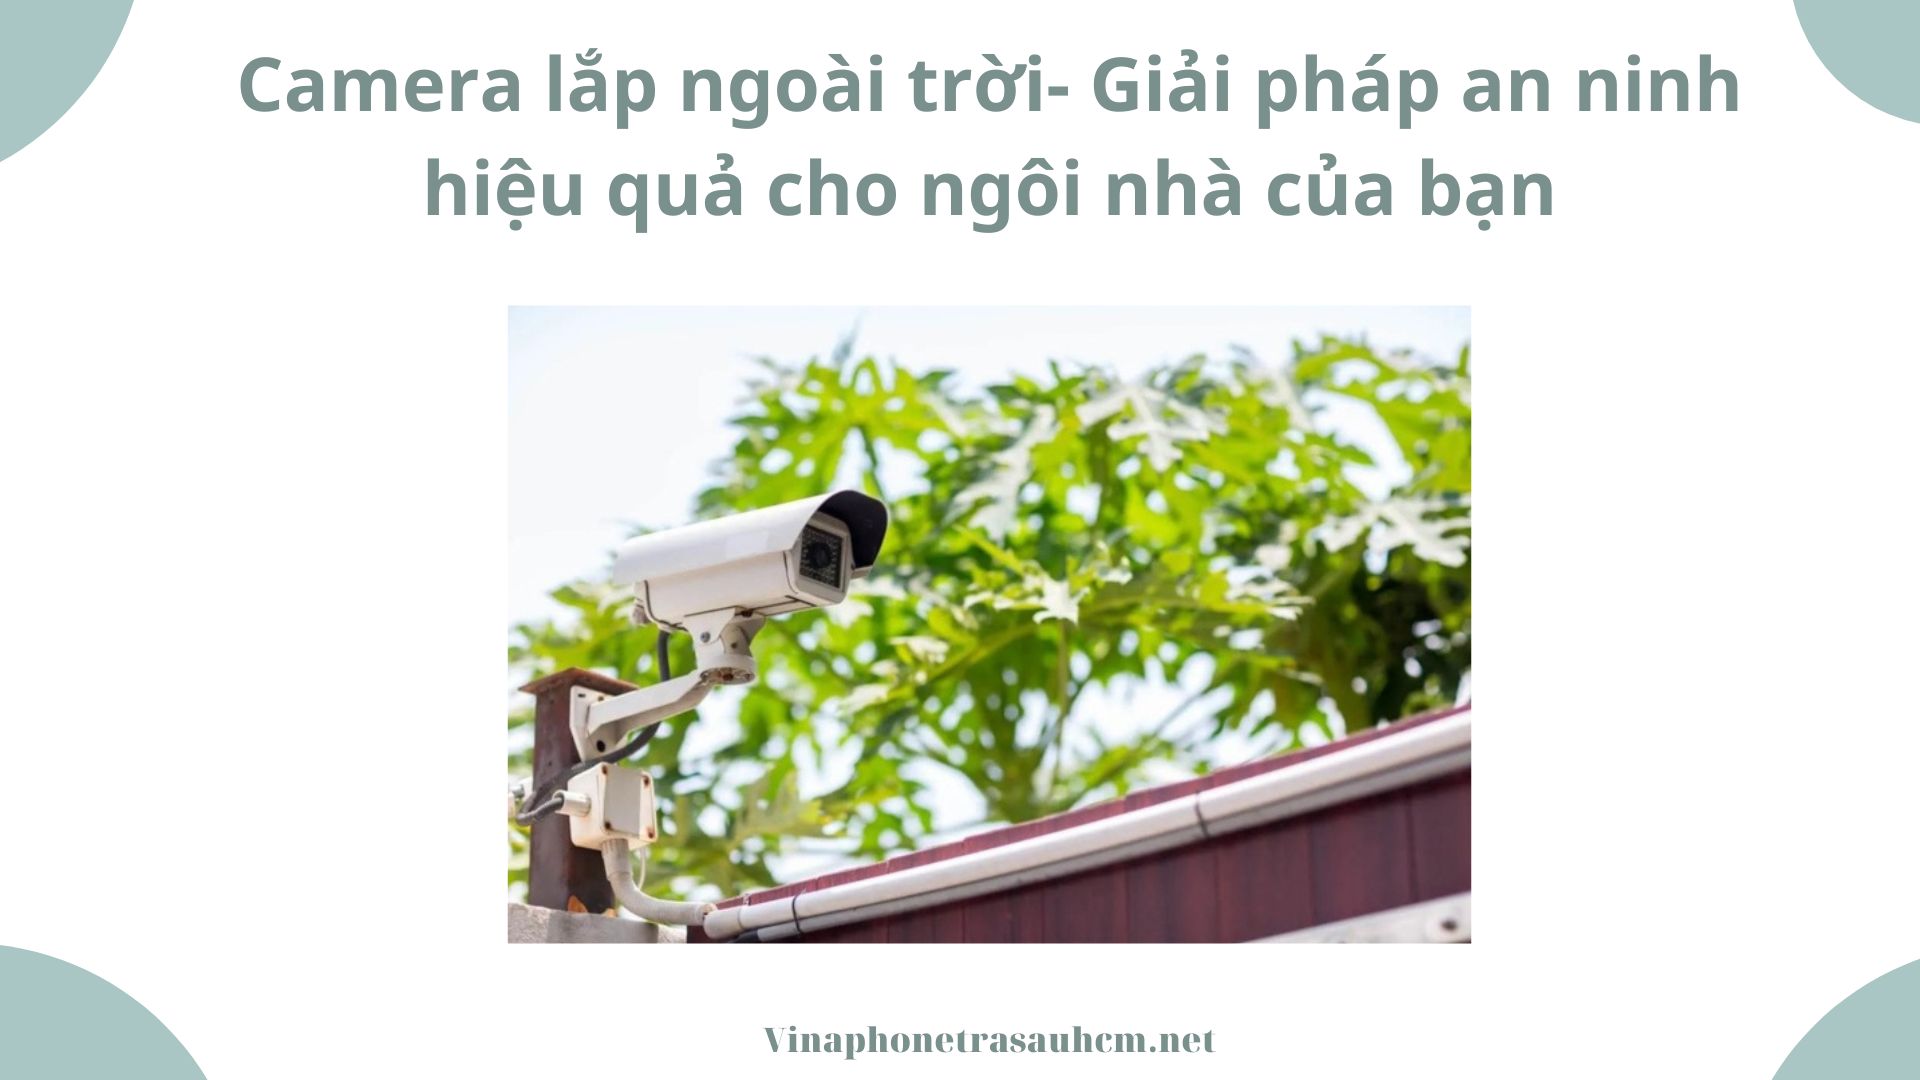 Camera lắp ngoài trời- Giải pháp an ninh hiệu quả cho ngôi nhà của bạn